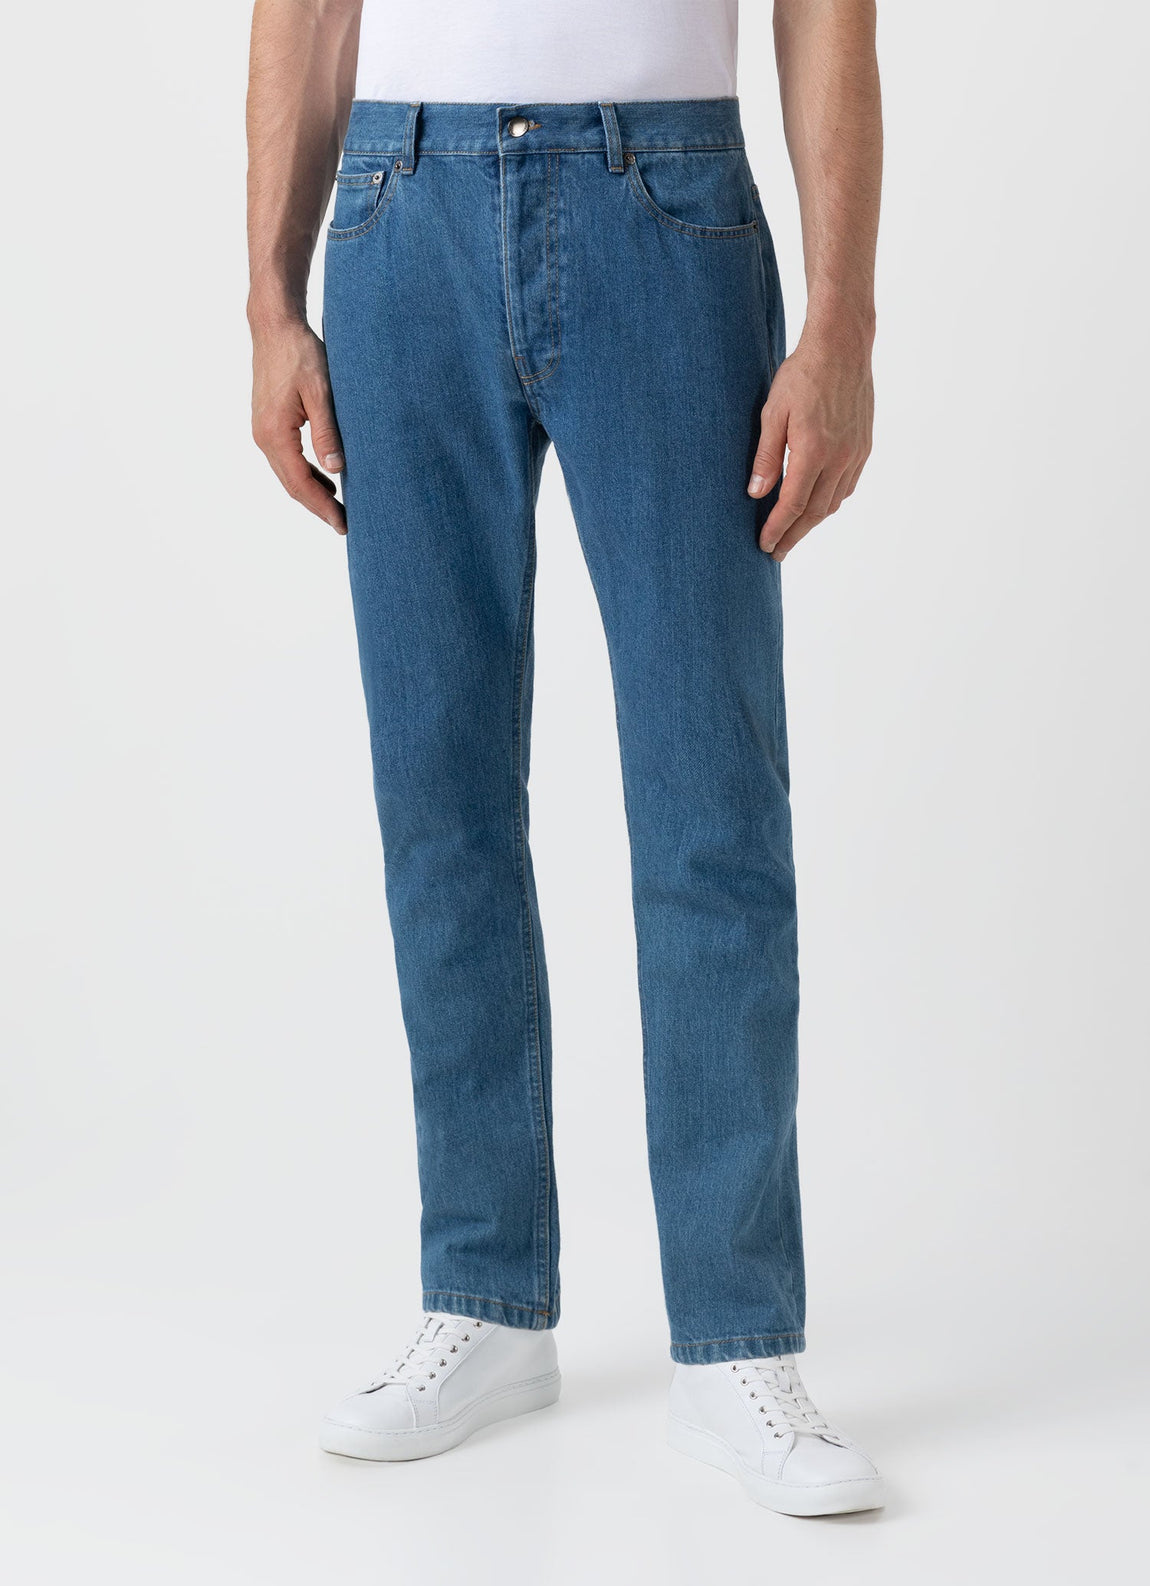 Men's Slim Fit Jean in Denim Mid Wash